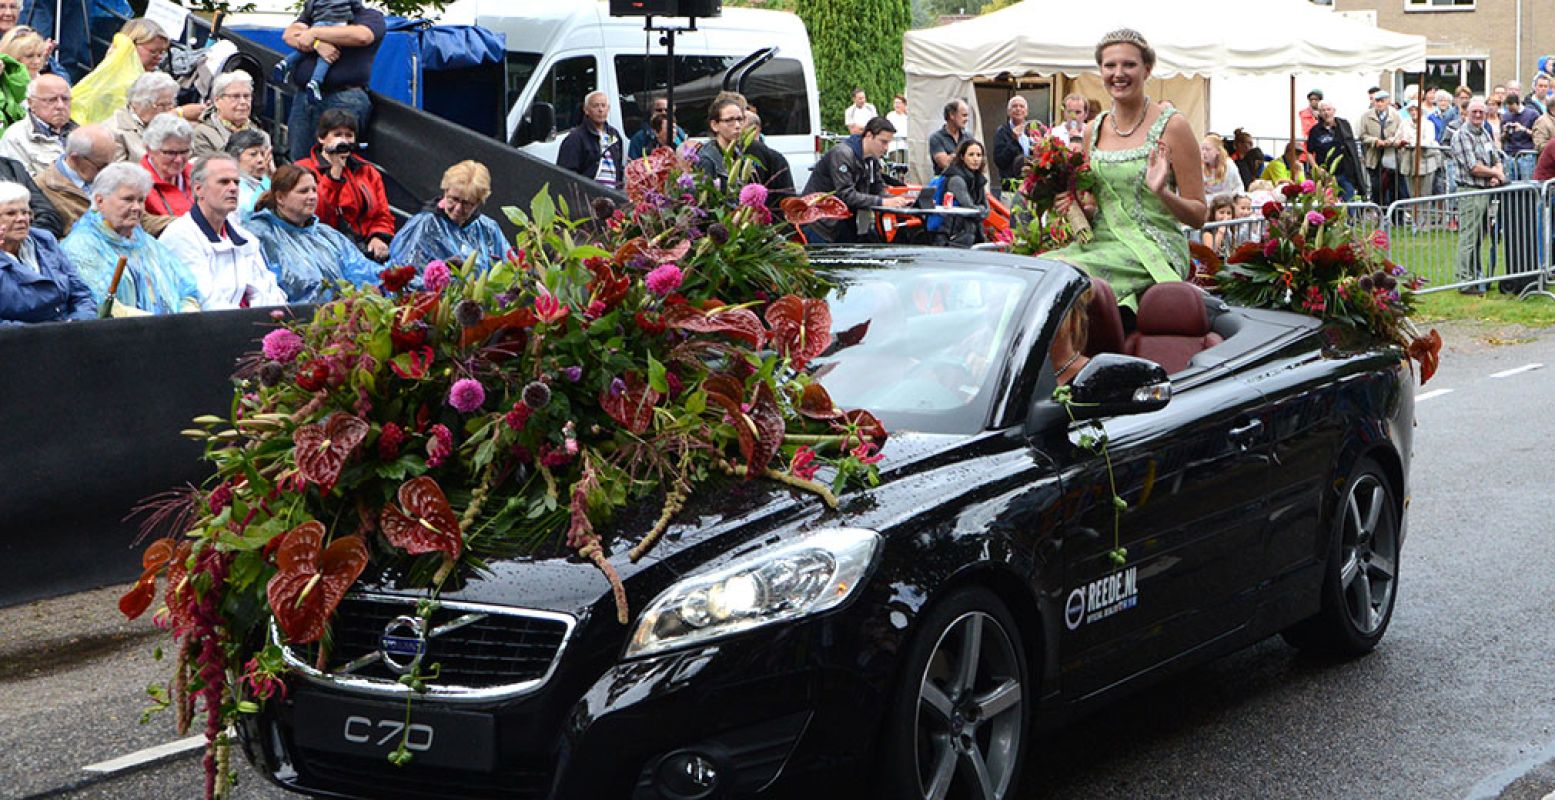 Elk jaar wordt de Bloemenkoningin verkozen. Ze krijgt een ereplaatsje in de optocht. Foto: Bloemencorso Leersum.